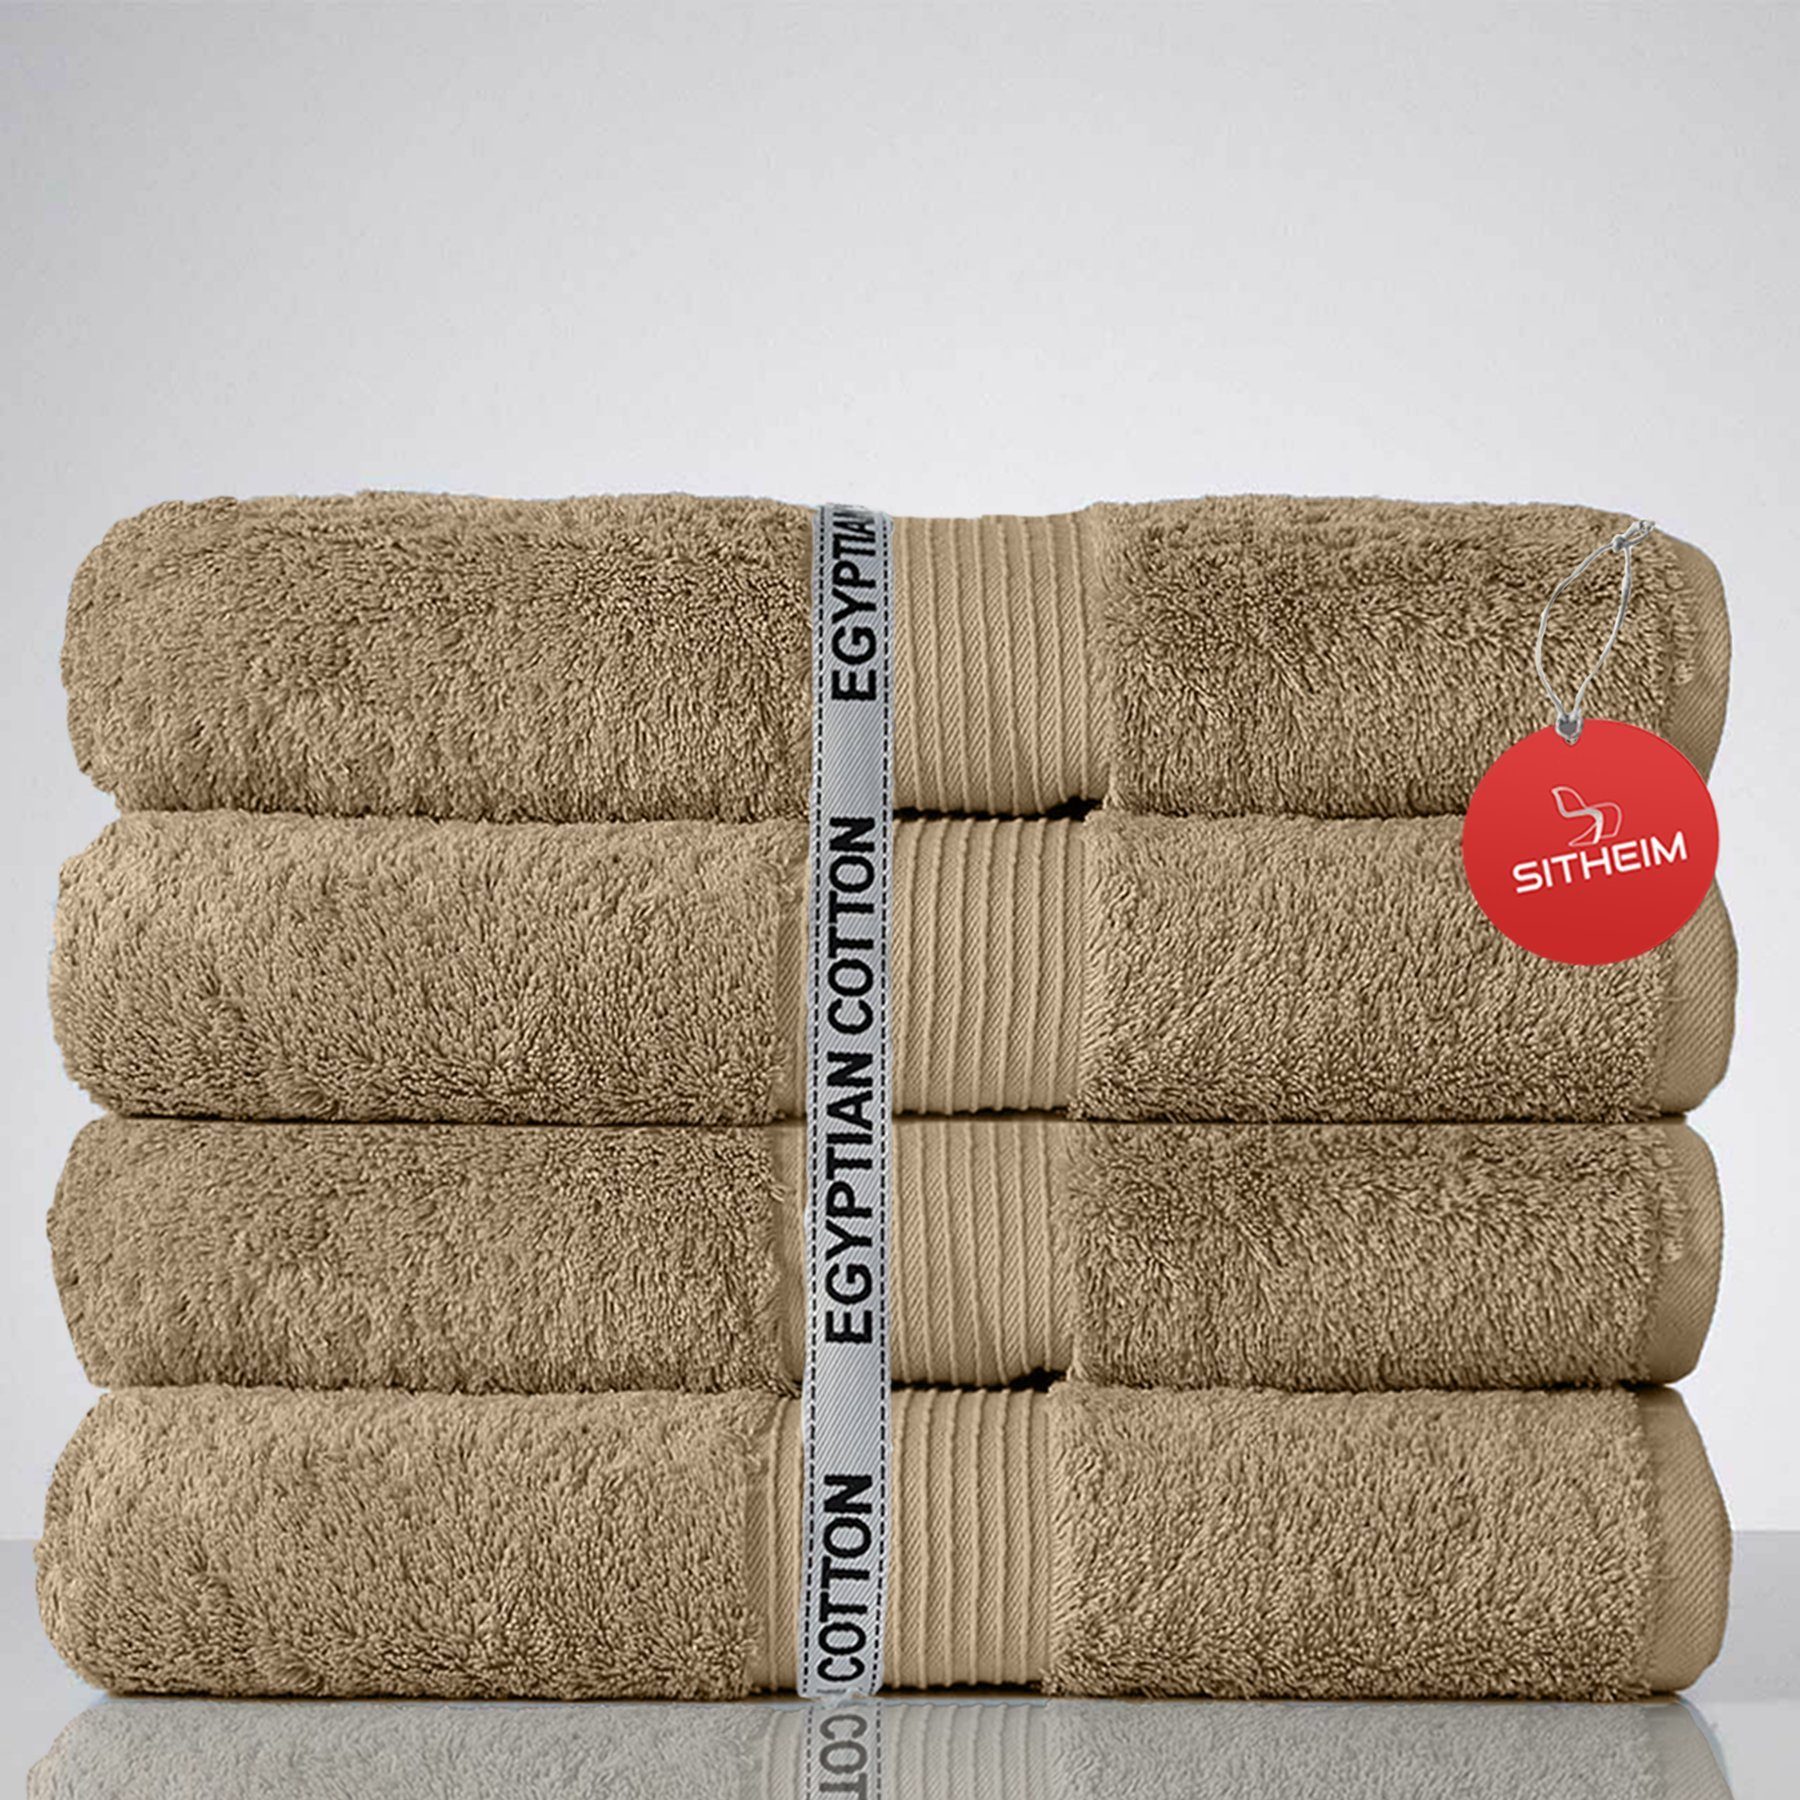 Sitheim-Europe Handtuch Set GIZA LINE I aus 100% Baumwolle (Spar-Set, 4-tlg) Duschtuchset, Ägyptische Baumwolle, (Spar-set, 4-tlg), 100% premium ägyptische Baumwolle, langlebig Beige